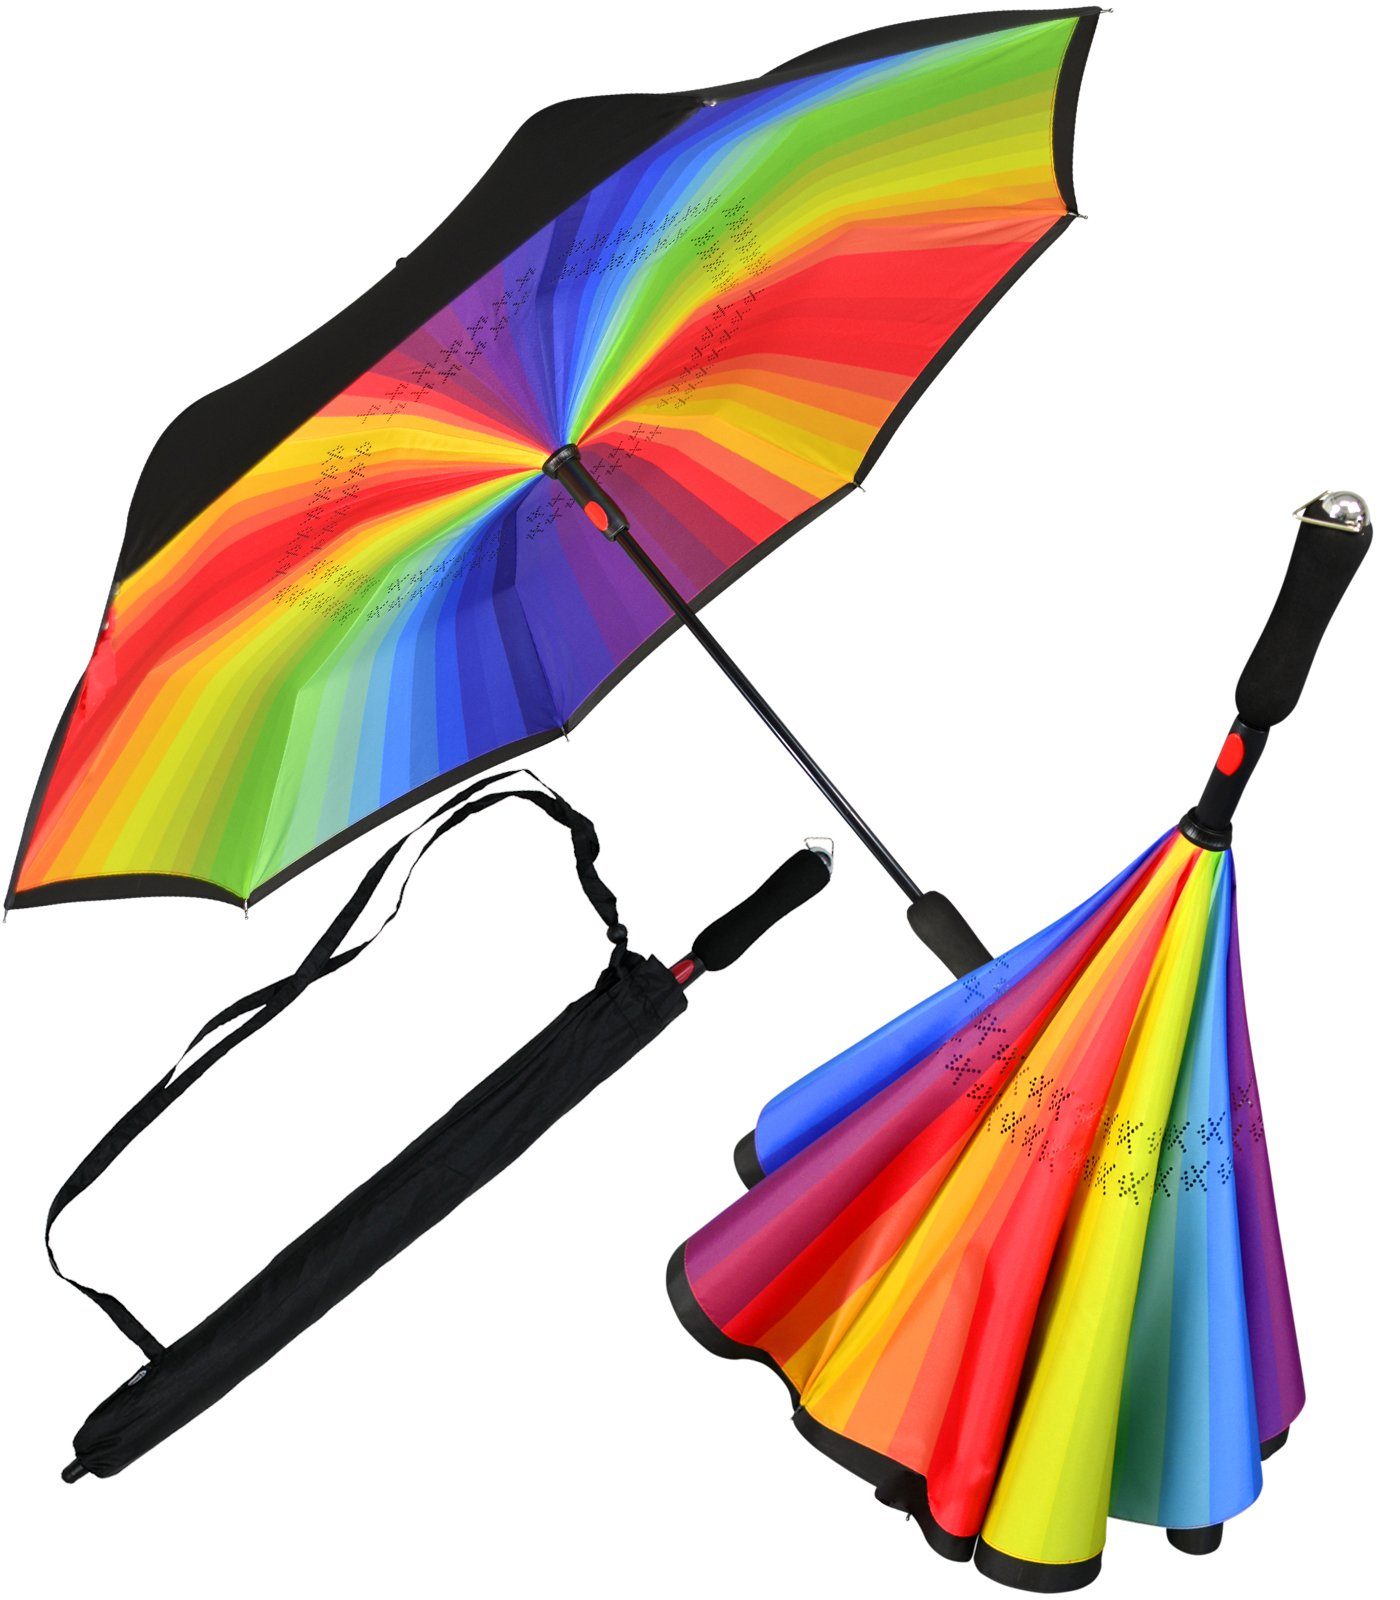 iX-brella Langregenschirm Reverse-Schirm - umgedreht zu öffnen mit Automatik, perfekt um aus dem Auto ein- oder auszusteigen schwarz-bunt